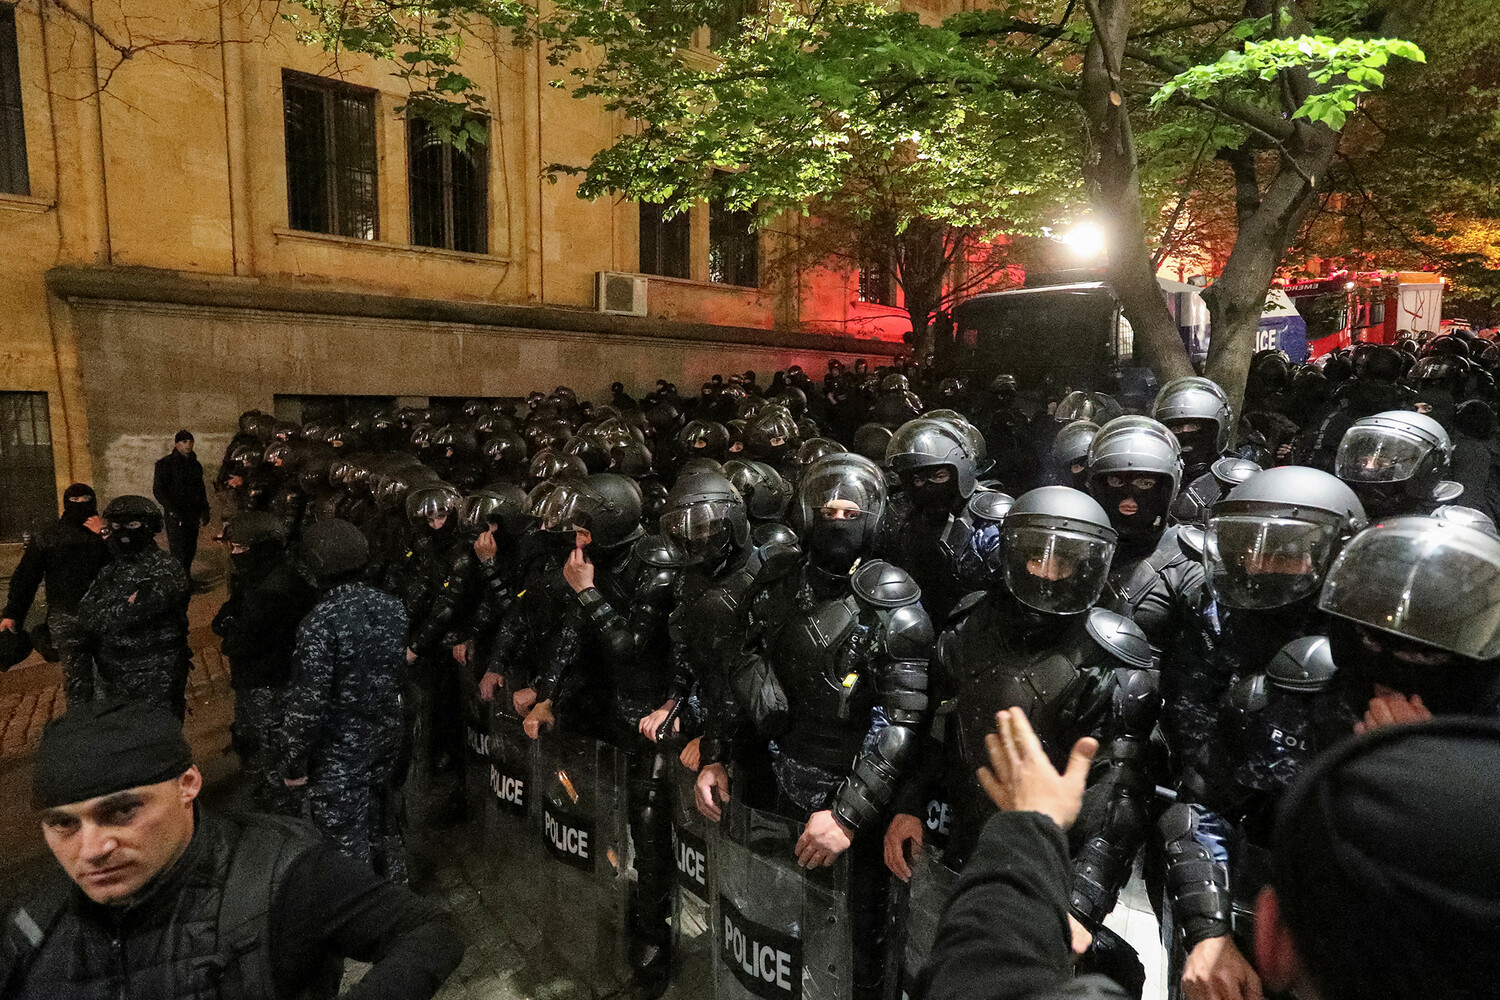 В Грузии заявили об отсутствии у Парижа здравой позиции по событиям в Тбилиси